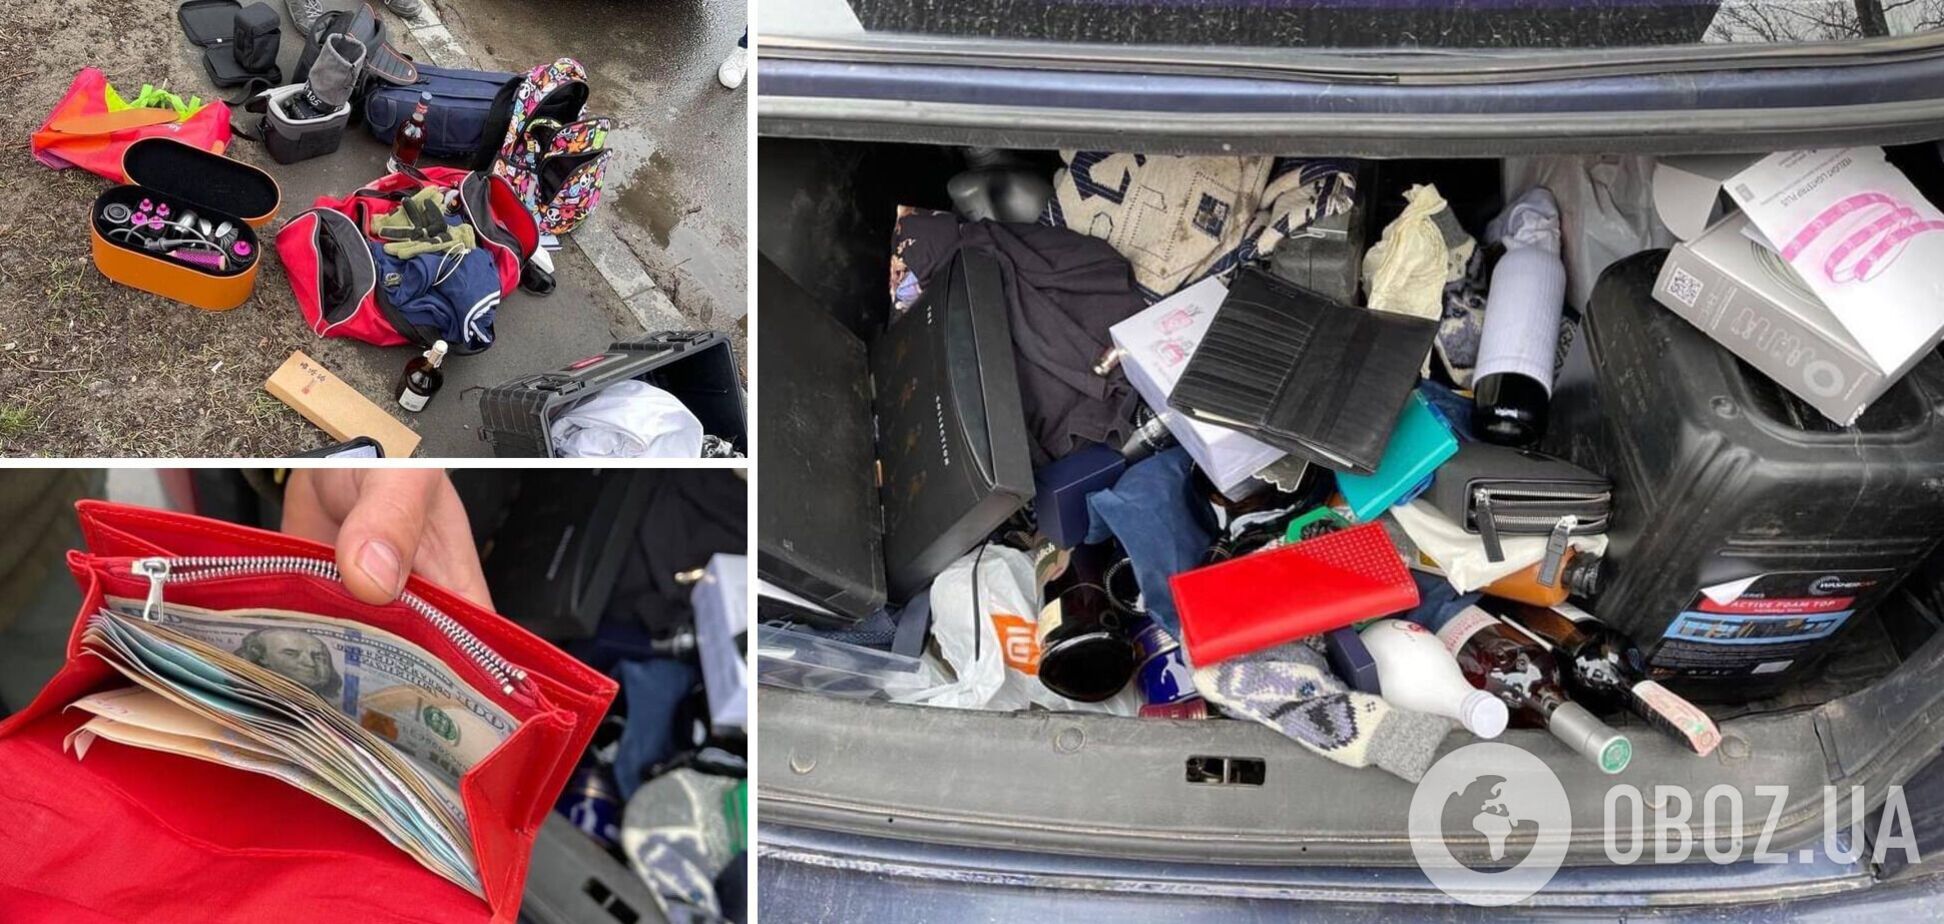 В багажнике машині нашли украденные вещи